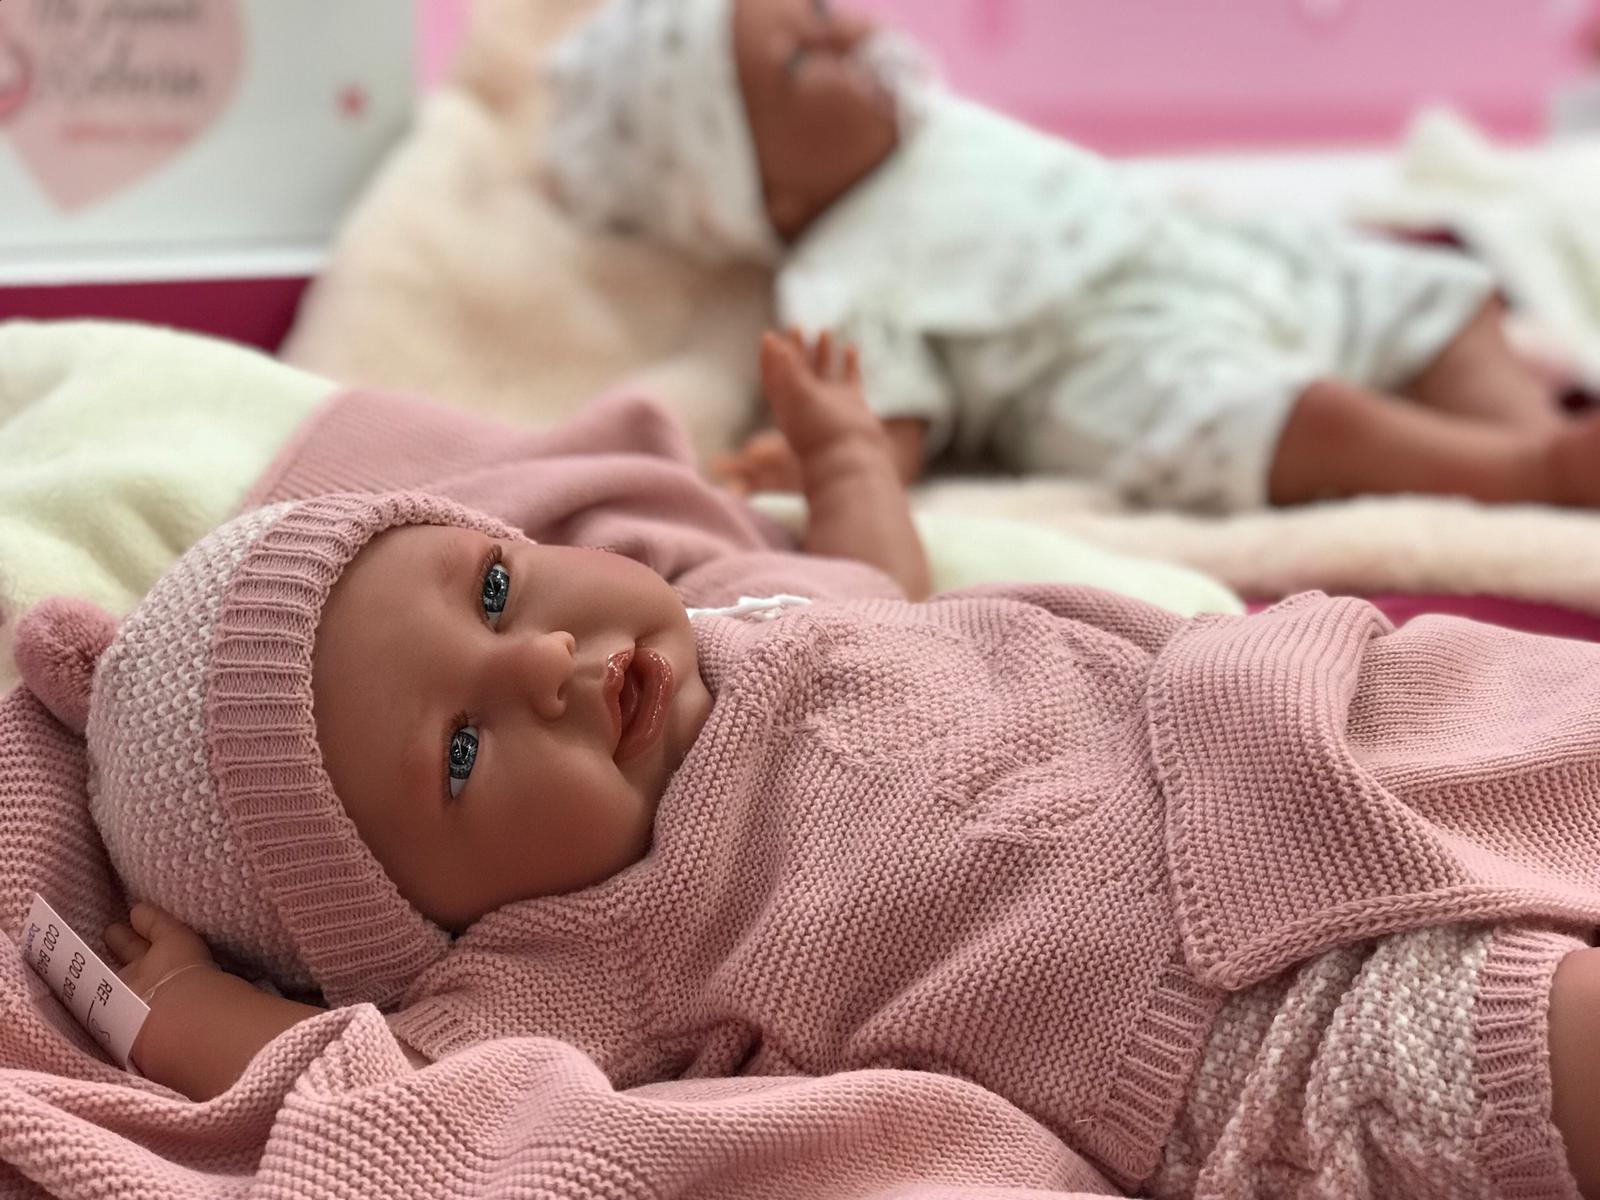 AJ10a Antonio Juan Mijn eerste reborn baby grote babypop met kleding deken en speen 52 – Selintoys